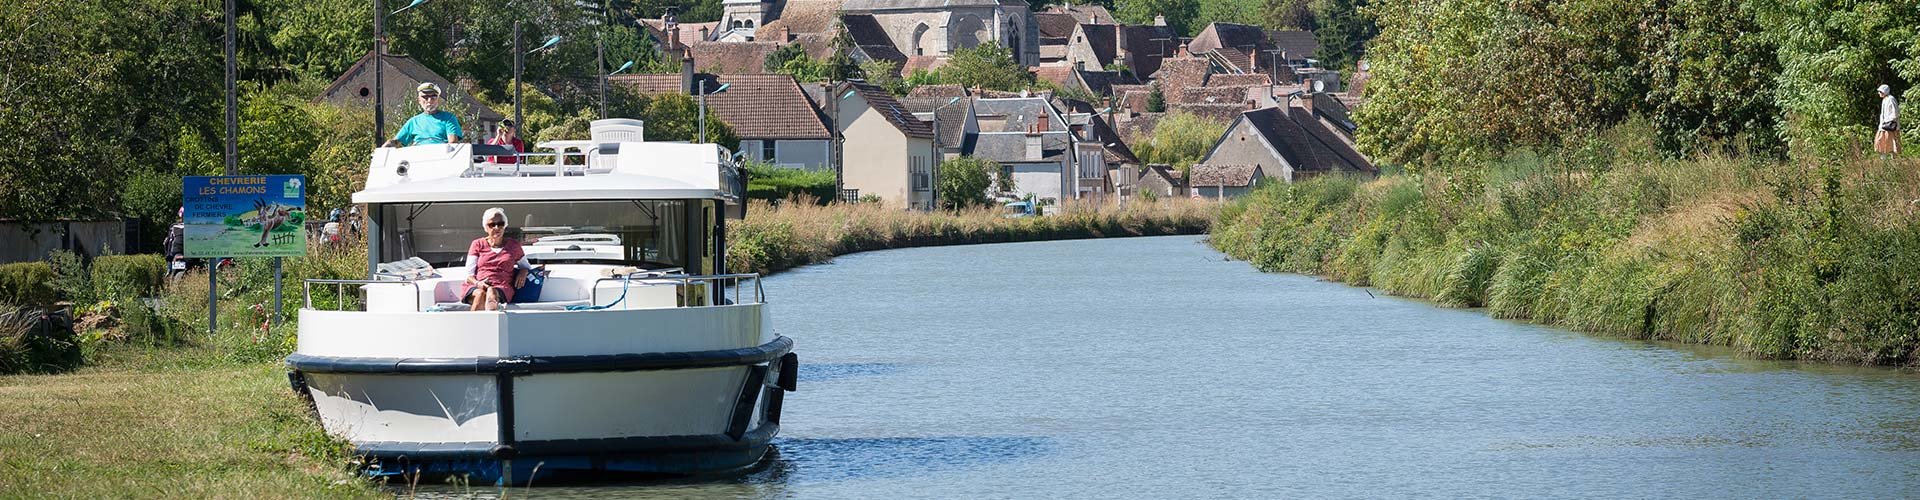 Crucero & alquiler de barco sin necesidad de licencia en Borgoña